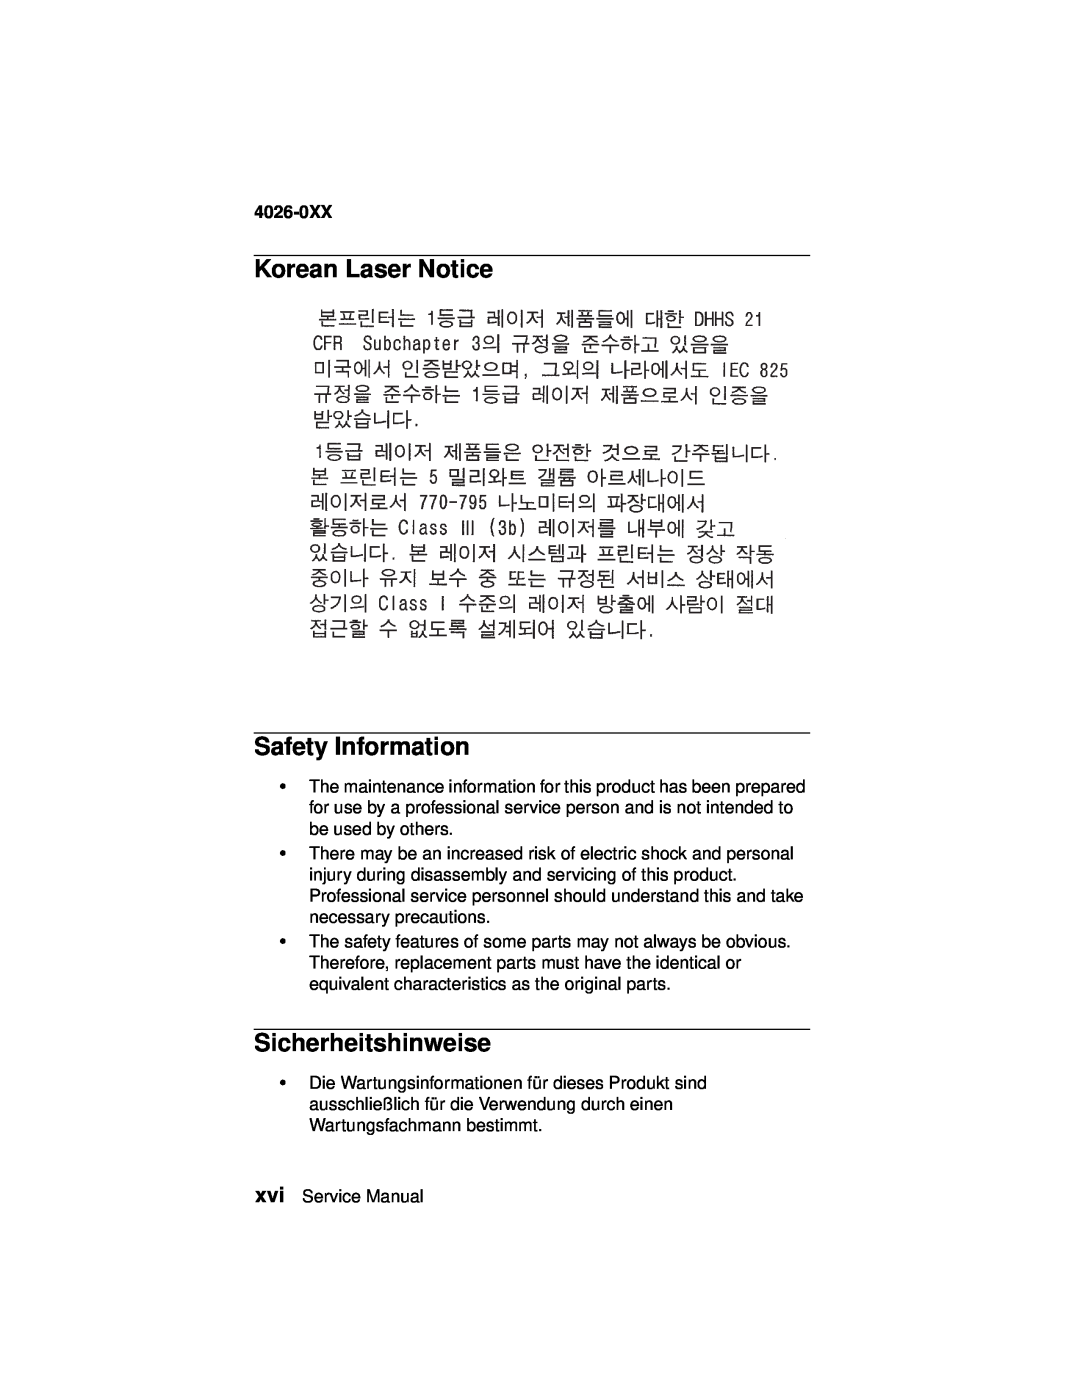 Lexmark OptraTM manual Korean Laser Notice Safety Information, Sicherheitshinweise, 4026-0XX 